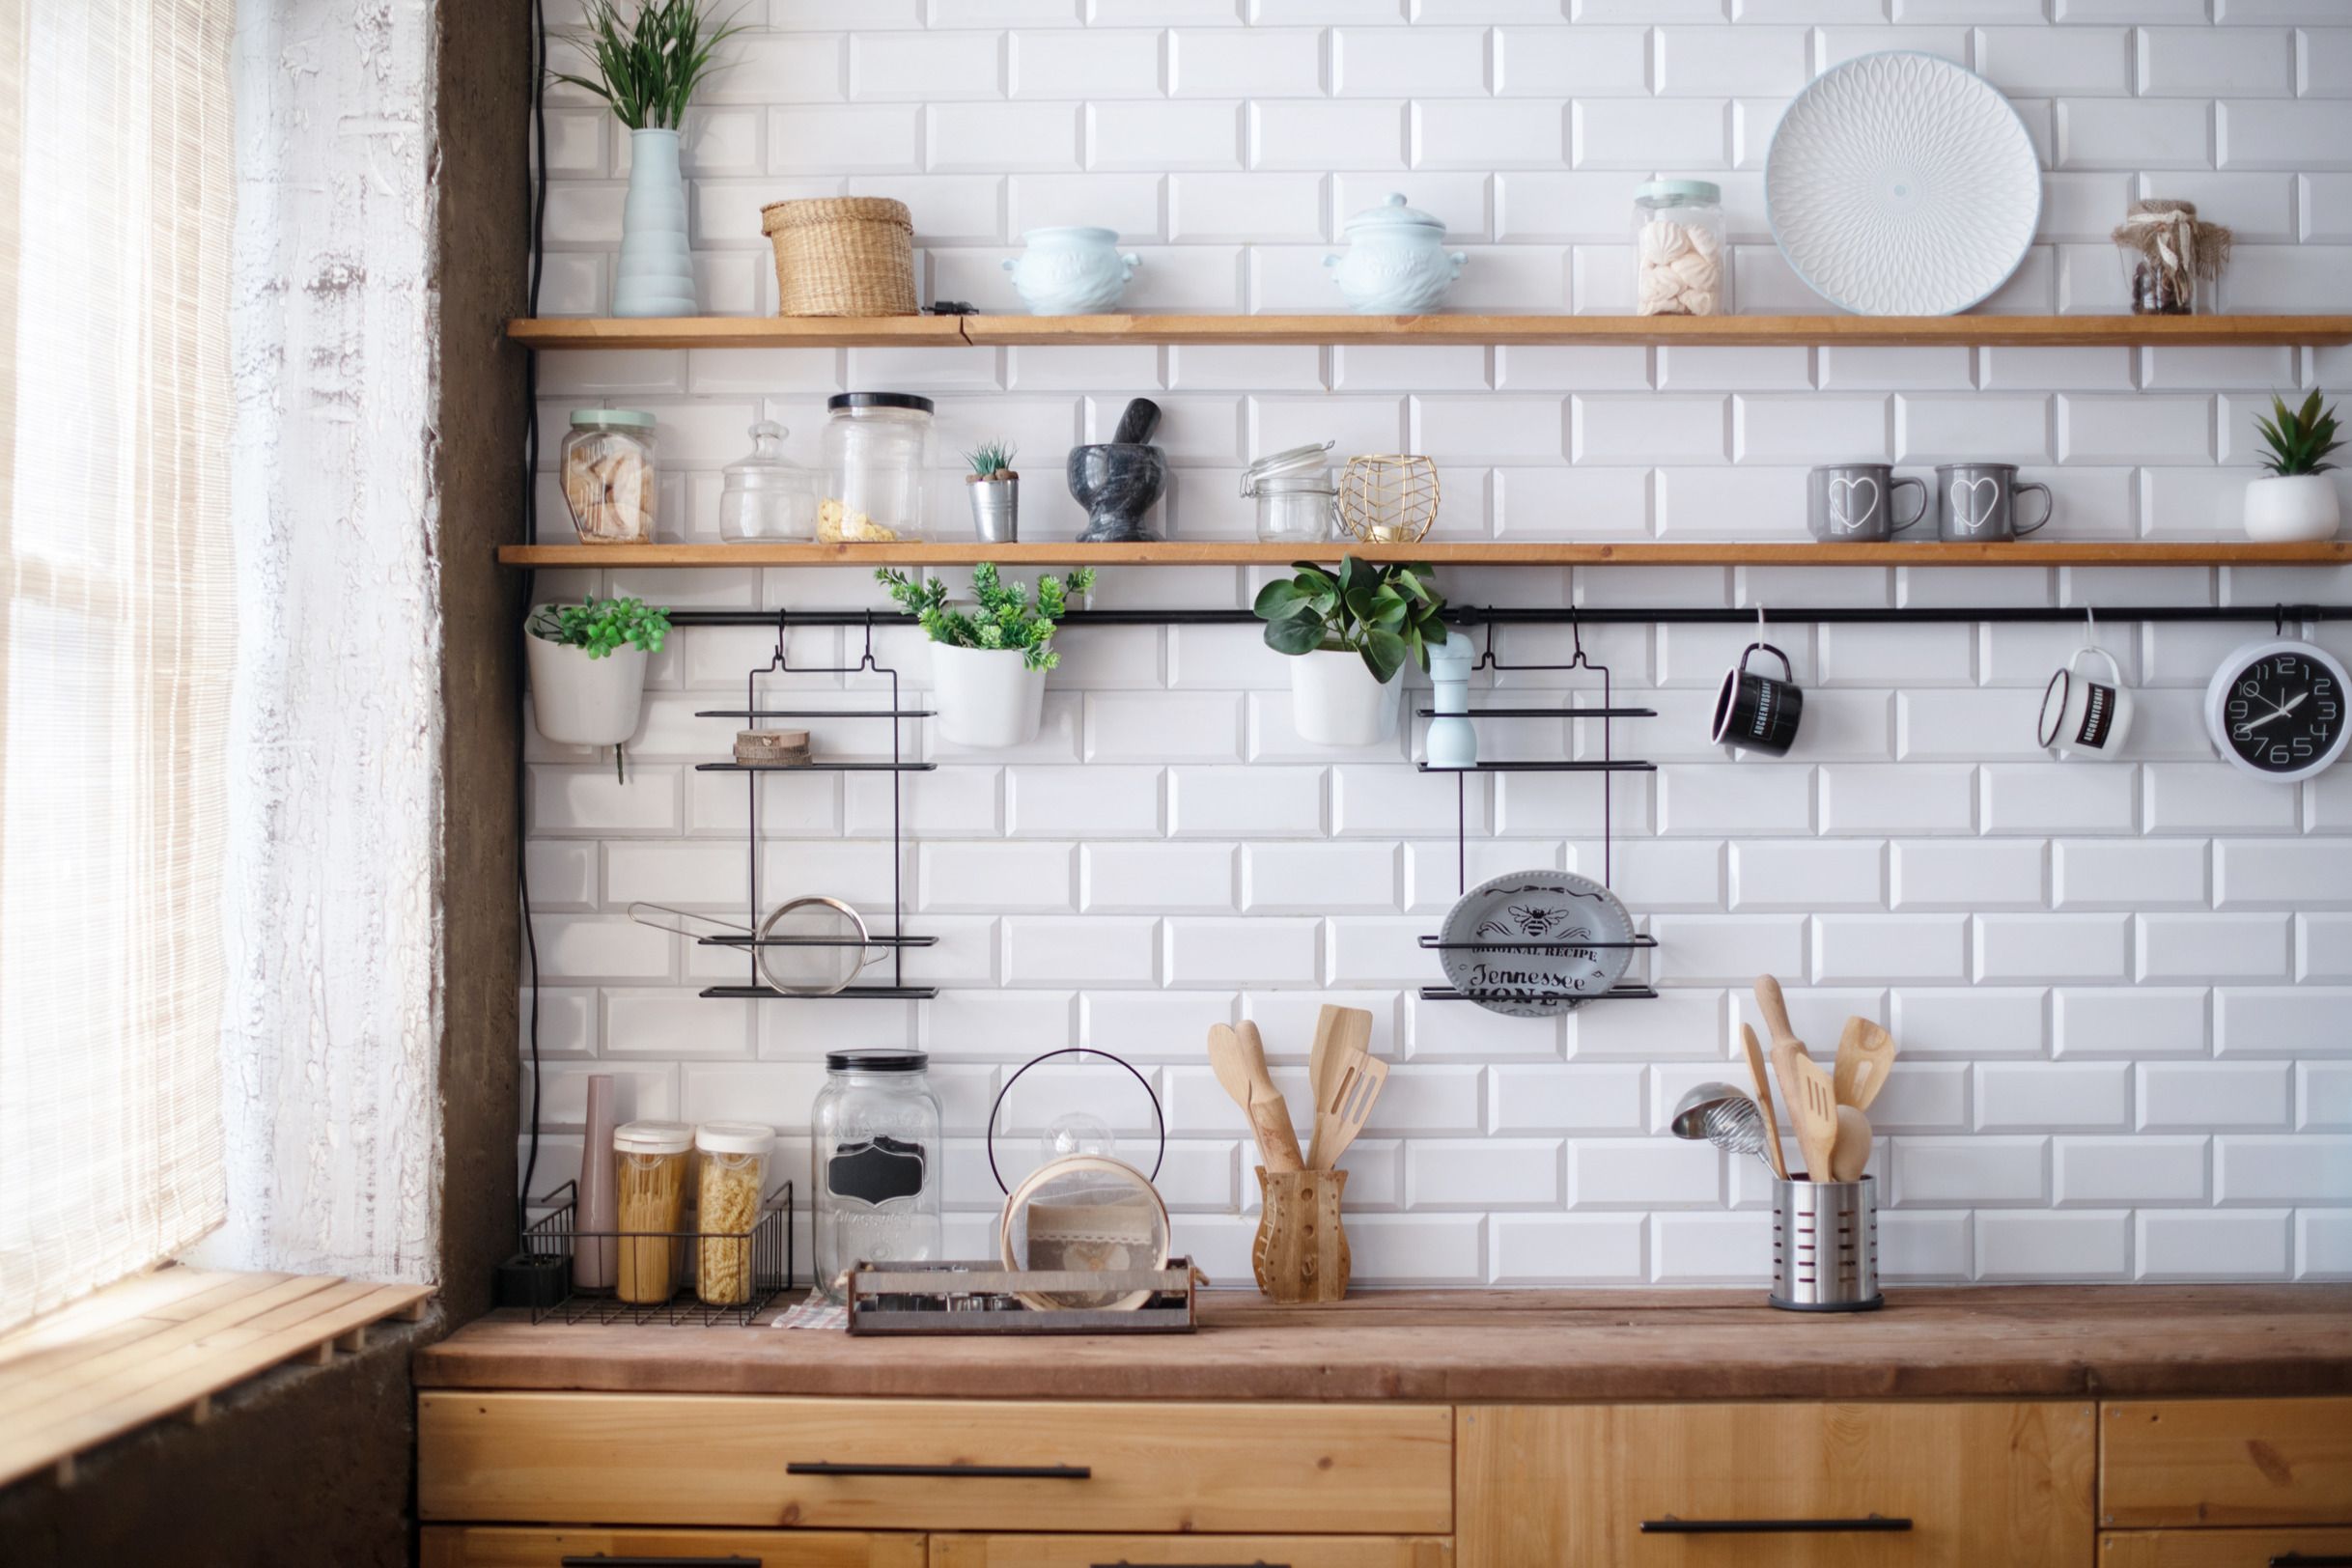 Mueble Auxiliar de cocina en blanco y natural de estilo nórdico.